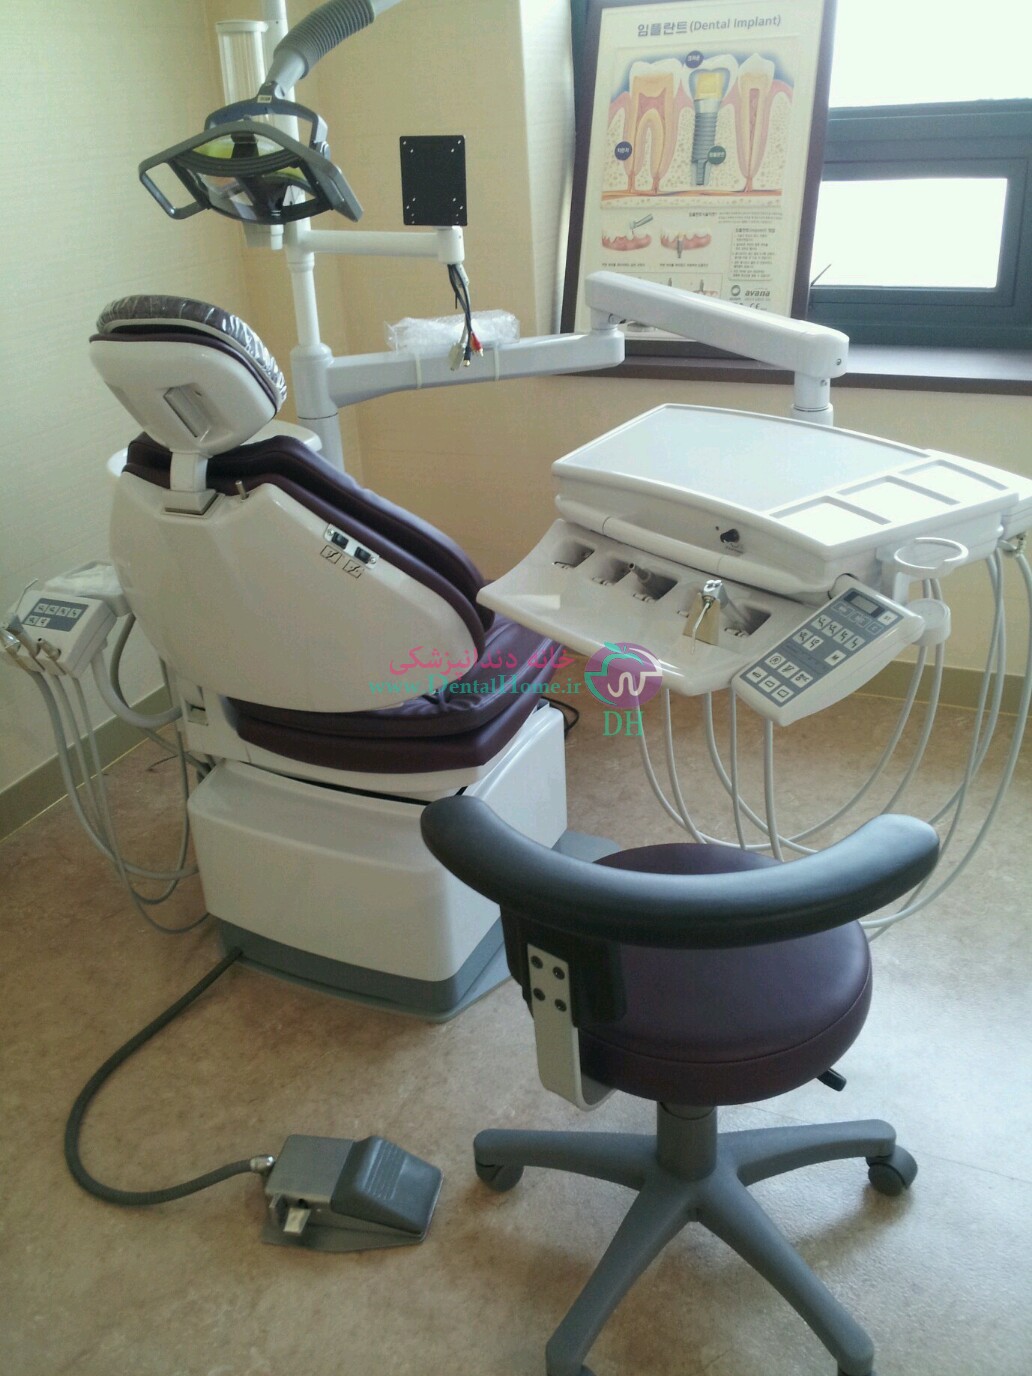 قیمت صندلی دندانپزشکی دست دوم